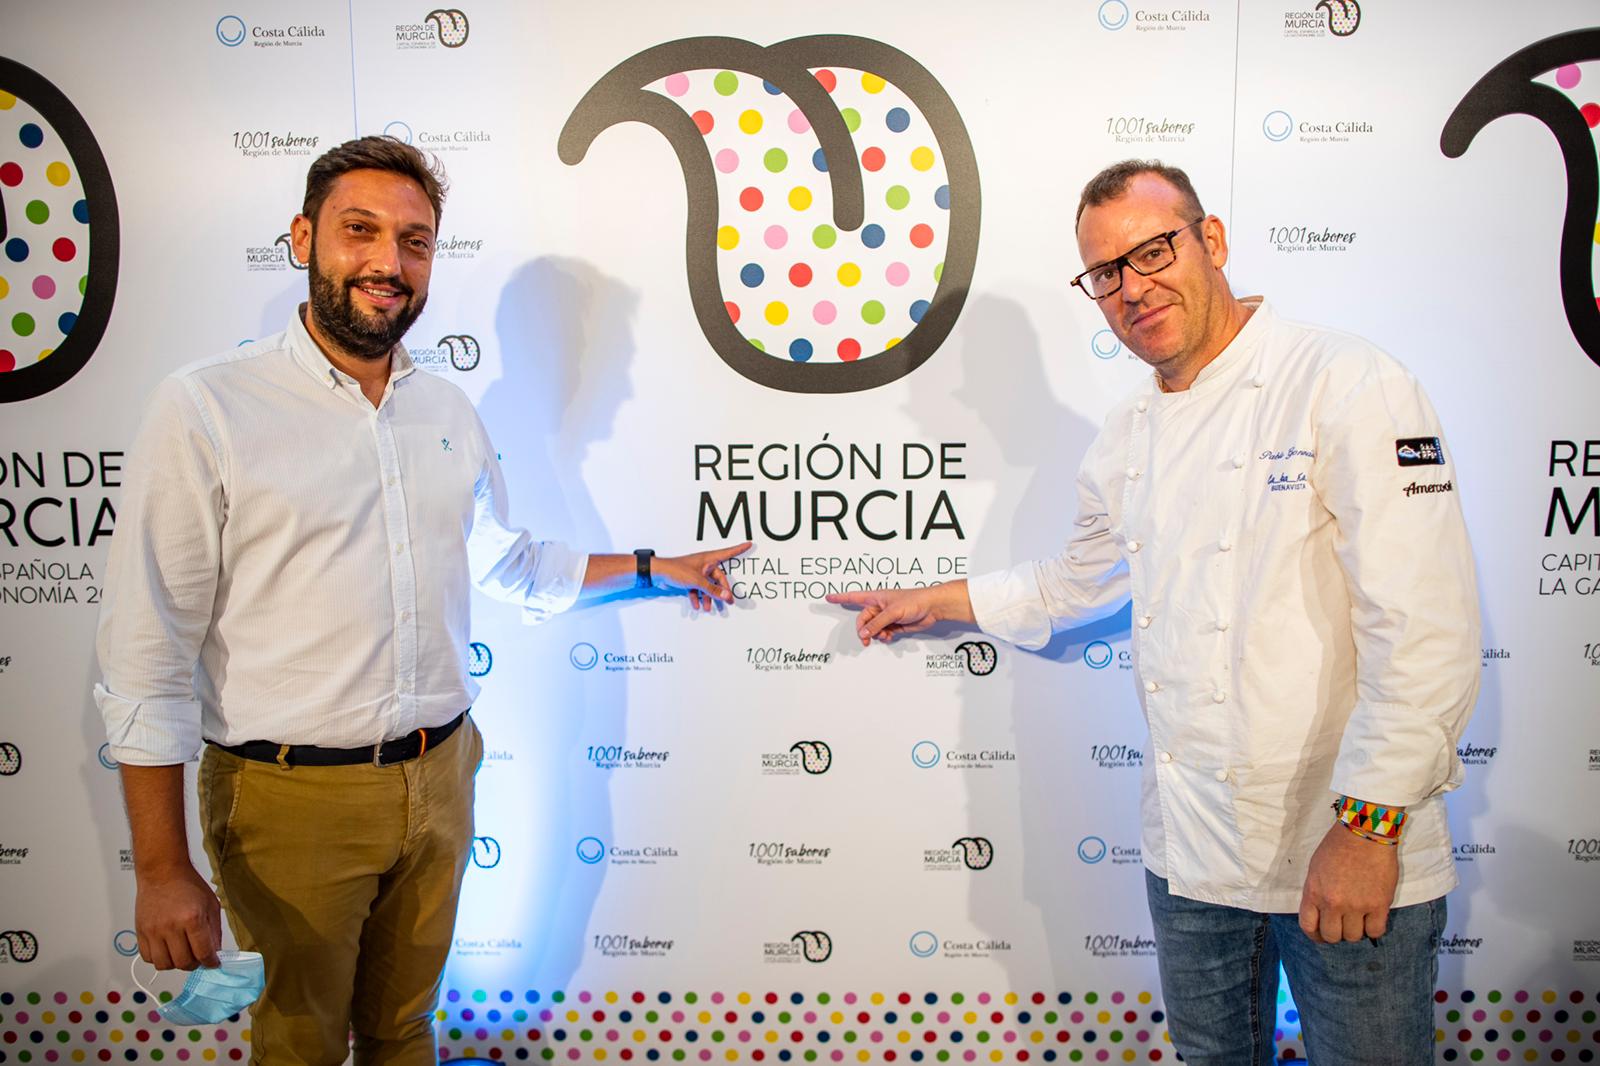 El director del Instituto de Turismo de la Región de Murcia, junto al chef del restaurante Cabaña Buenavista, Pablo González, quien se encargó de elaborar el menú degustación en la presentación